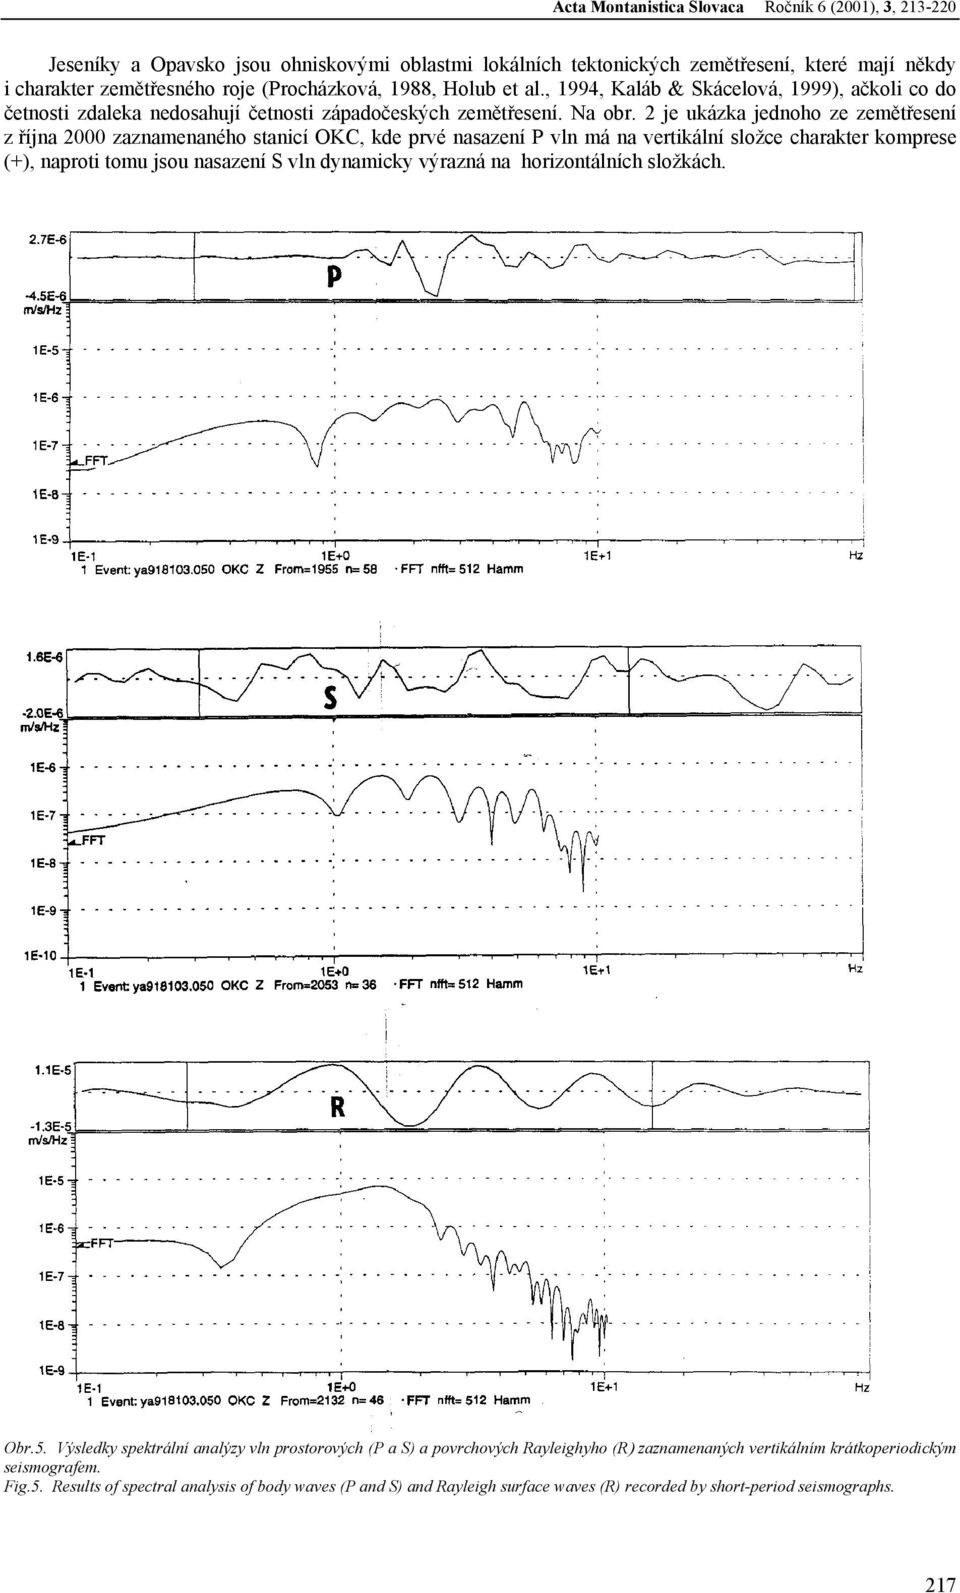 2 je ukázka jednoho ze zemětřesení z října 2000 zaznamenaného stanicí OKC, kde prvé nasazení P vln má na vertikální složce charakter komprese (+), naproti tomu jsou nasazení S vln dynamicky výrazná